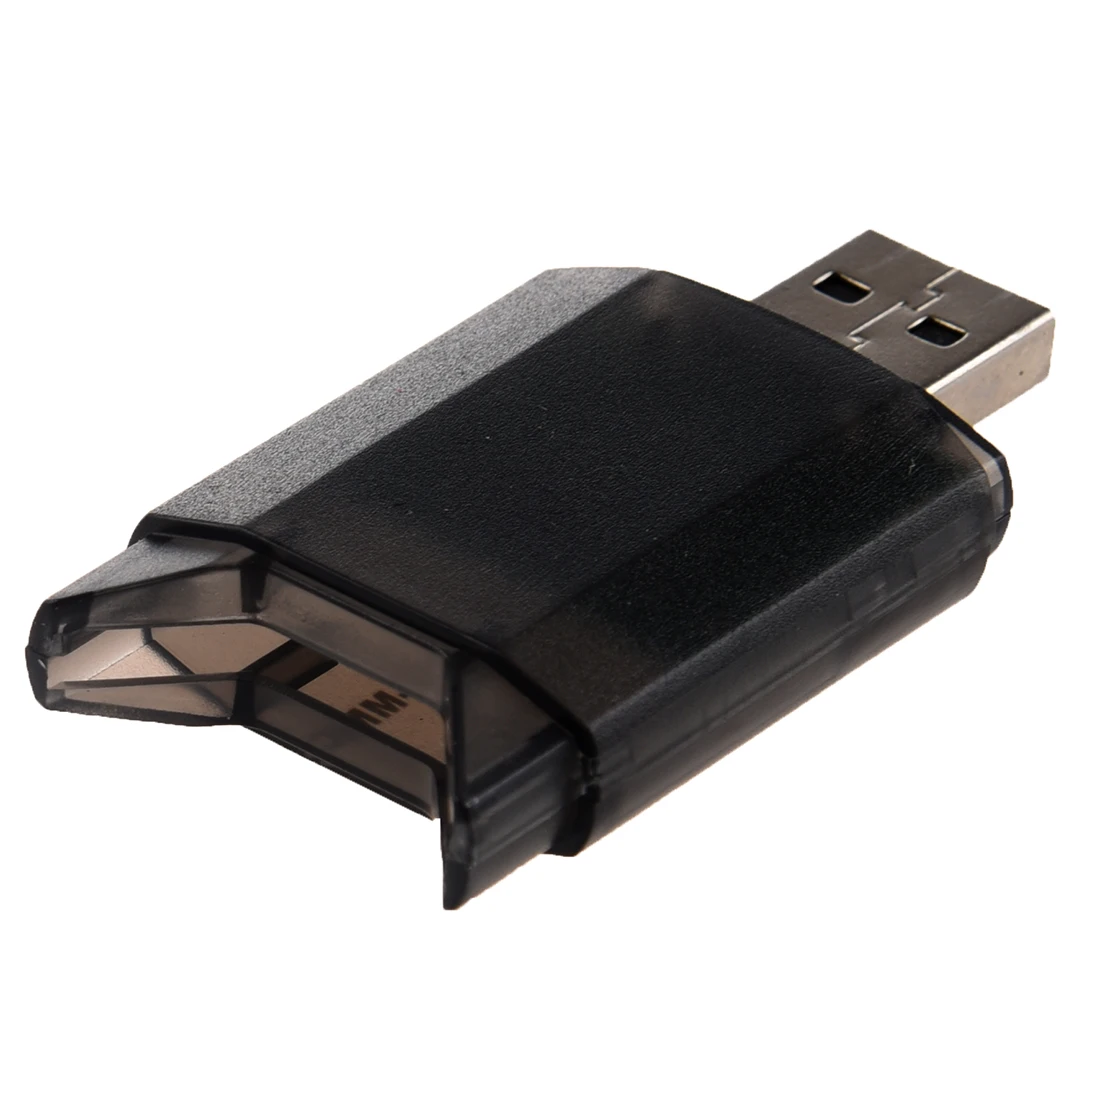 SD MiniSD MMC T-Flash key USB 2,0 кардридер (sd-карта и адаптер для карт не входят в комплект) черный